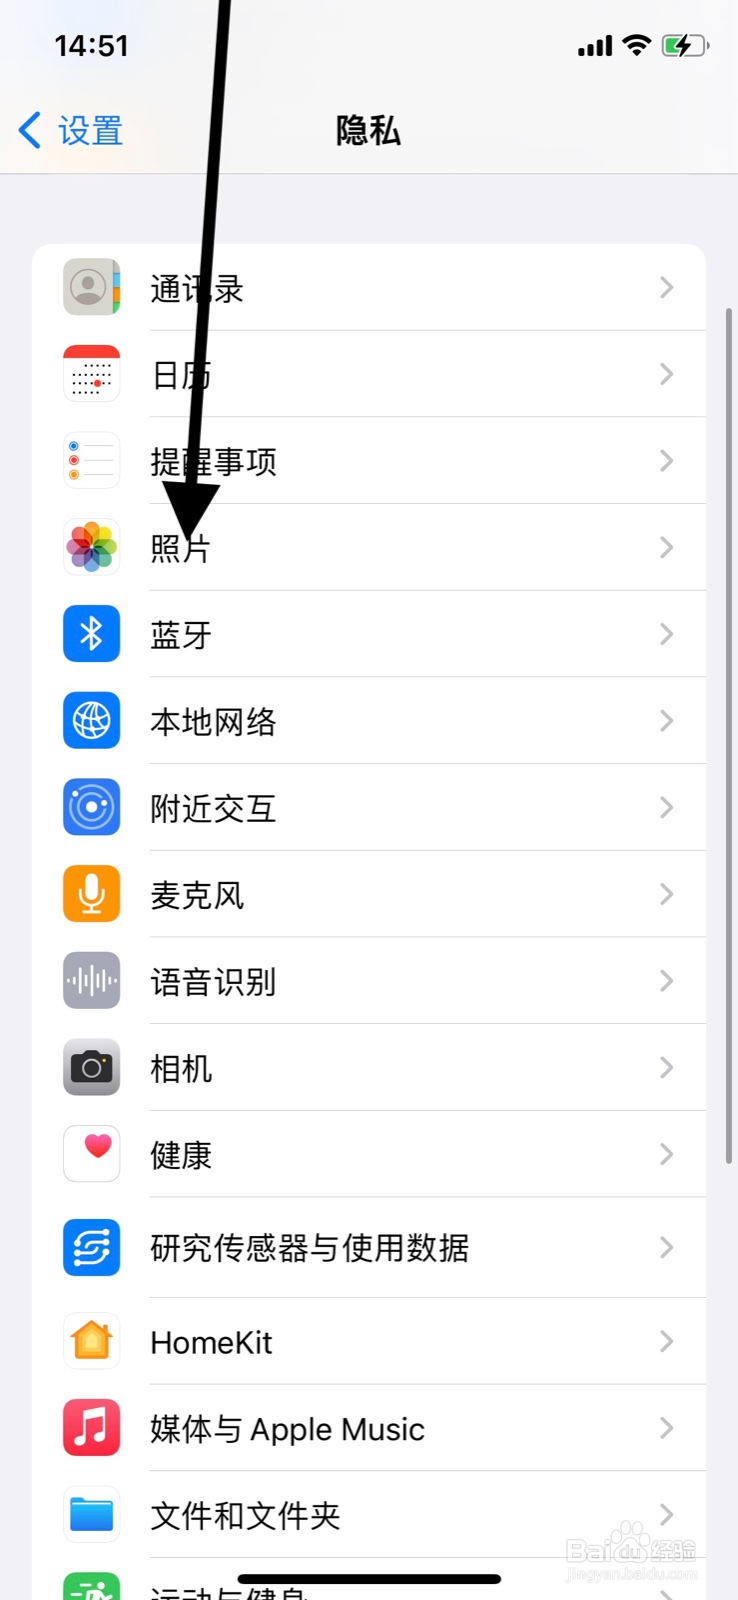 <b>iPhone准许“广东移动”app访问系统部分照片</b>